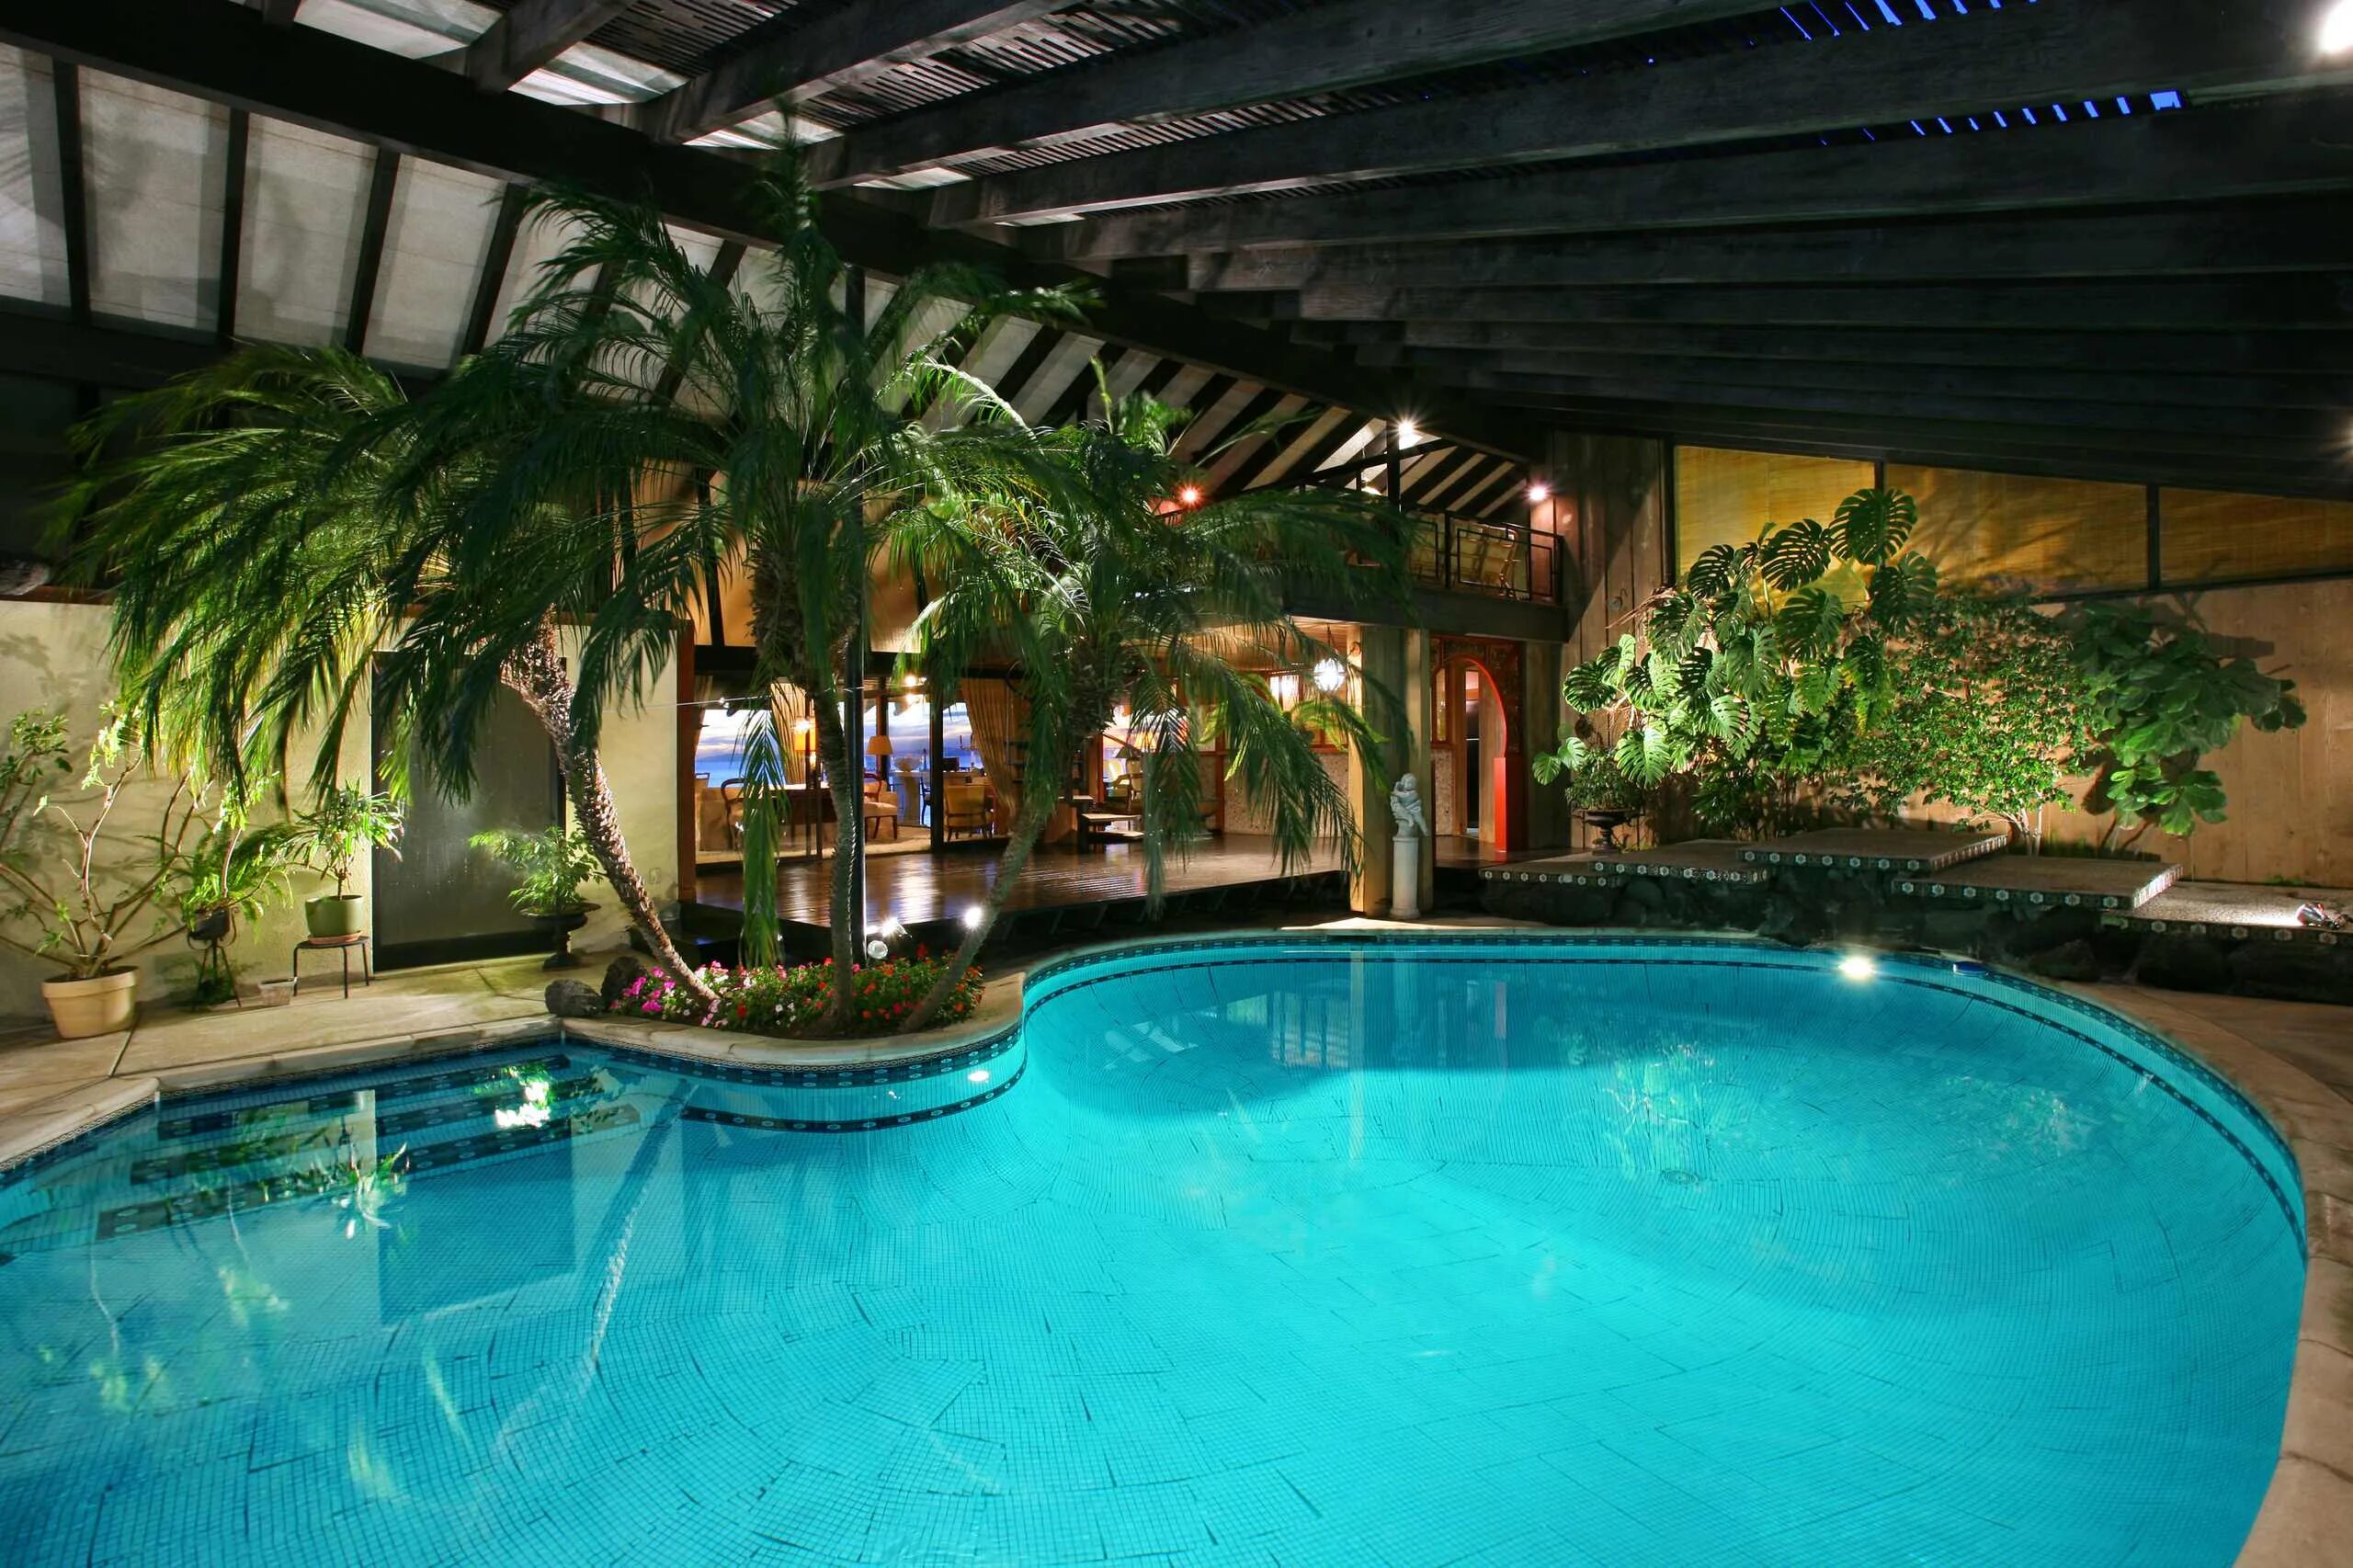 Красивый бассейн. Красивый бассейн в доме. Бассейн в тропическом стиле. Зимний сад с бассейном.